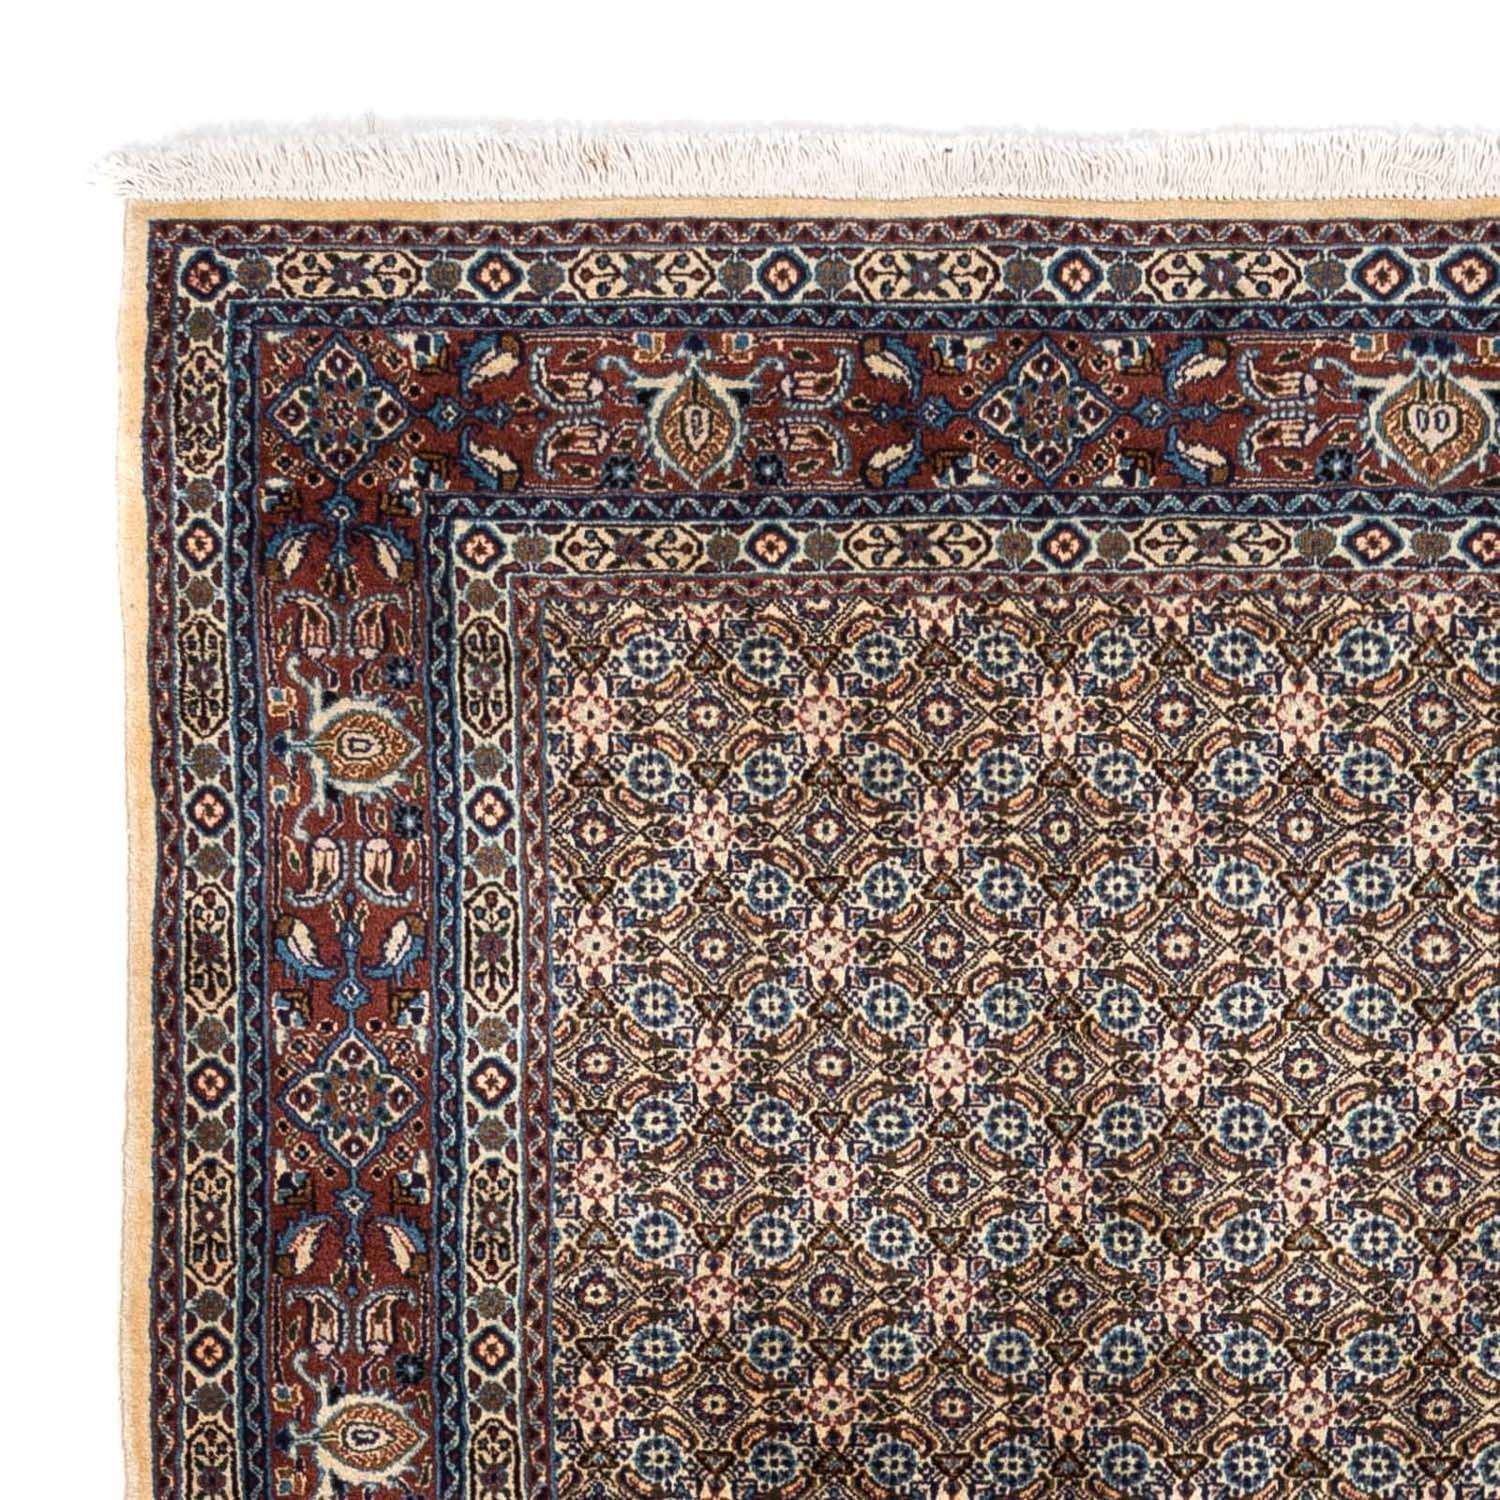 Perzisch tapijt - Klassiek - 237 x 172 cm - beige